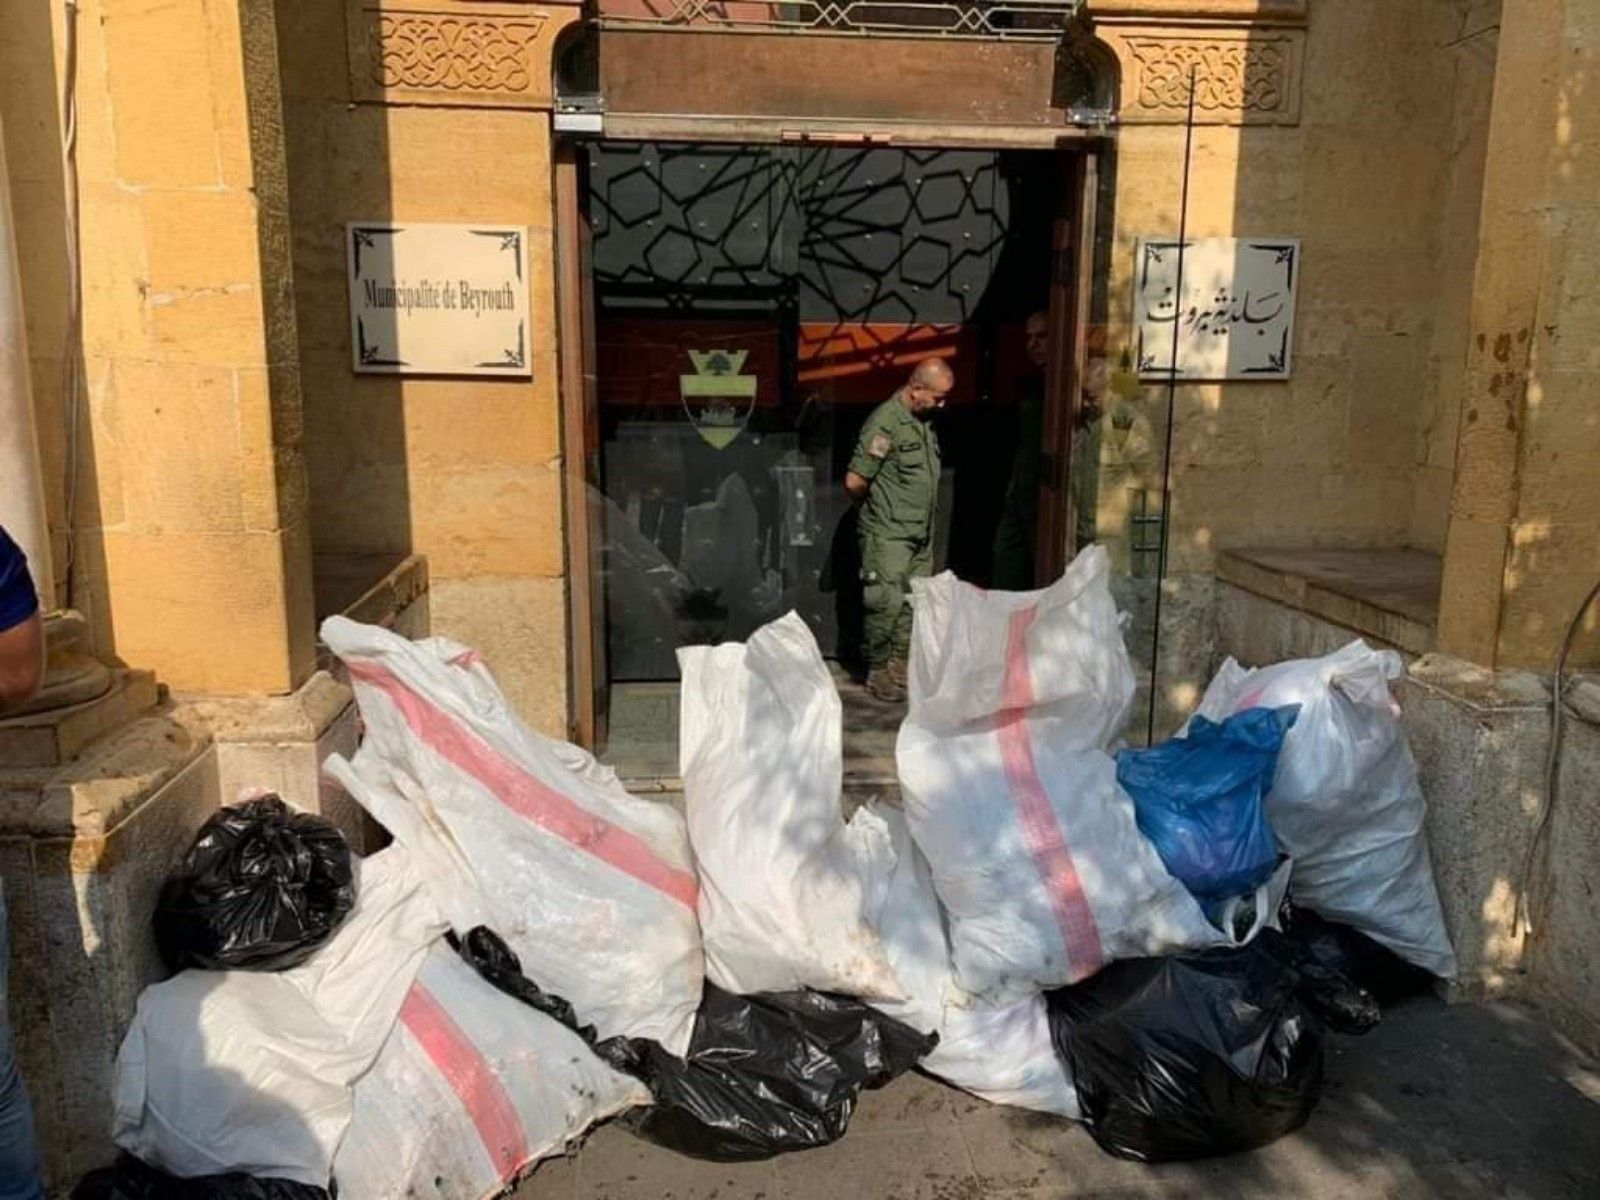 الصورة من امام مبنى محافظة بيروت قبل قليل حيث رمى المحتجون اكياس النفايات امامها